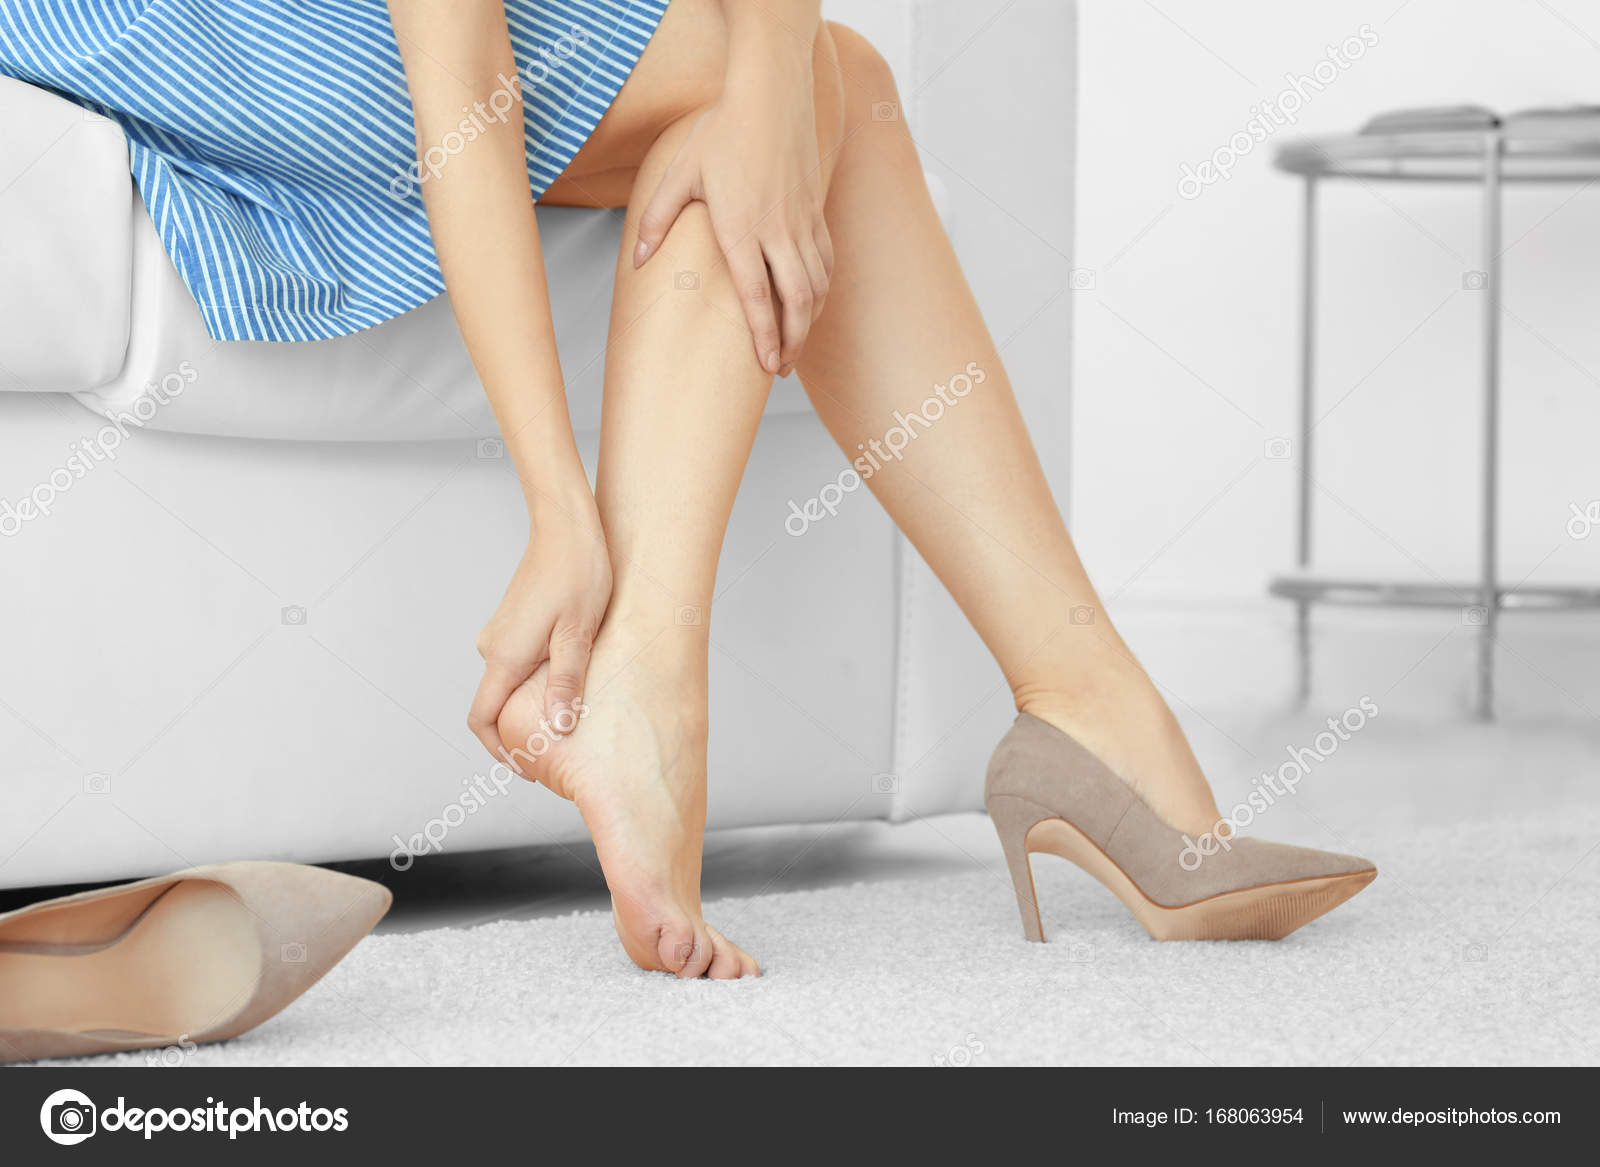 Legs видео. Усталость ног. Уставшие ноги. Неудобная обувь. Усталые женские ножки.